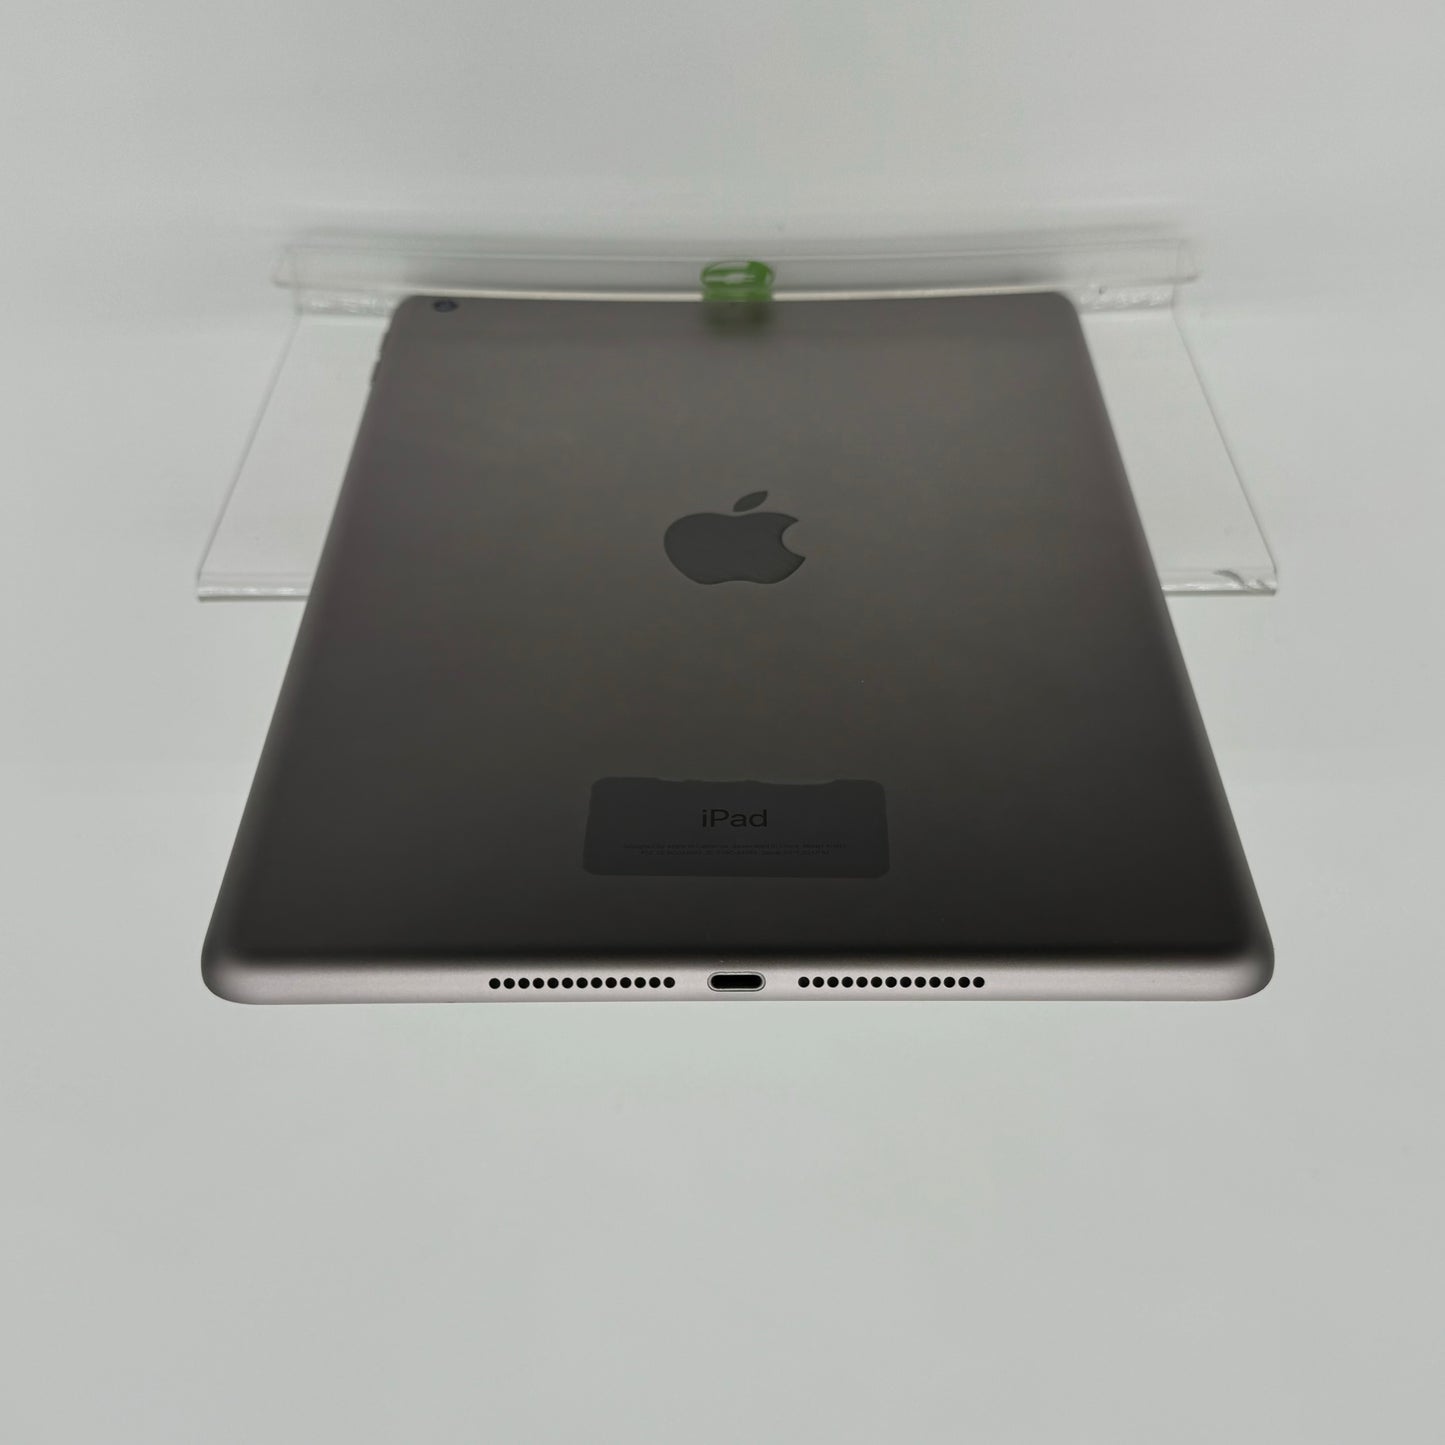 WiFi Only Apple iPad 6th Gen 32GB Silver MR7F2LL/A